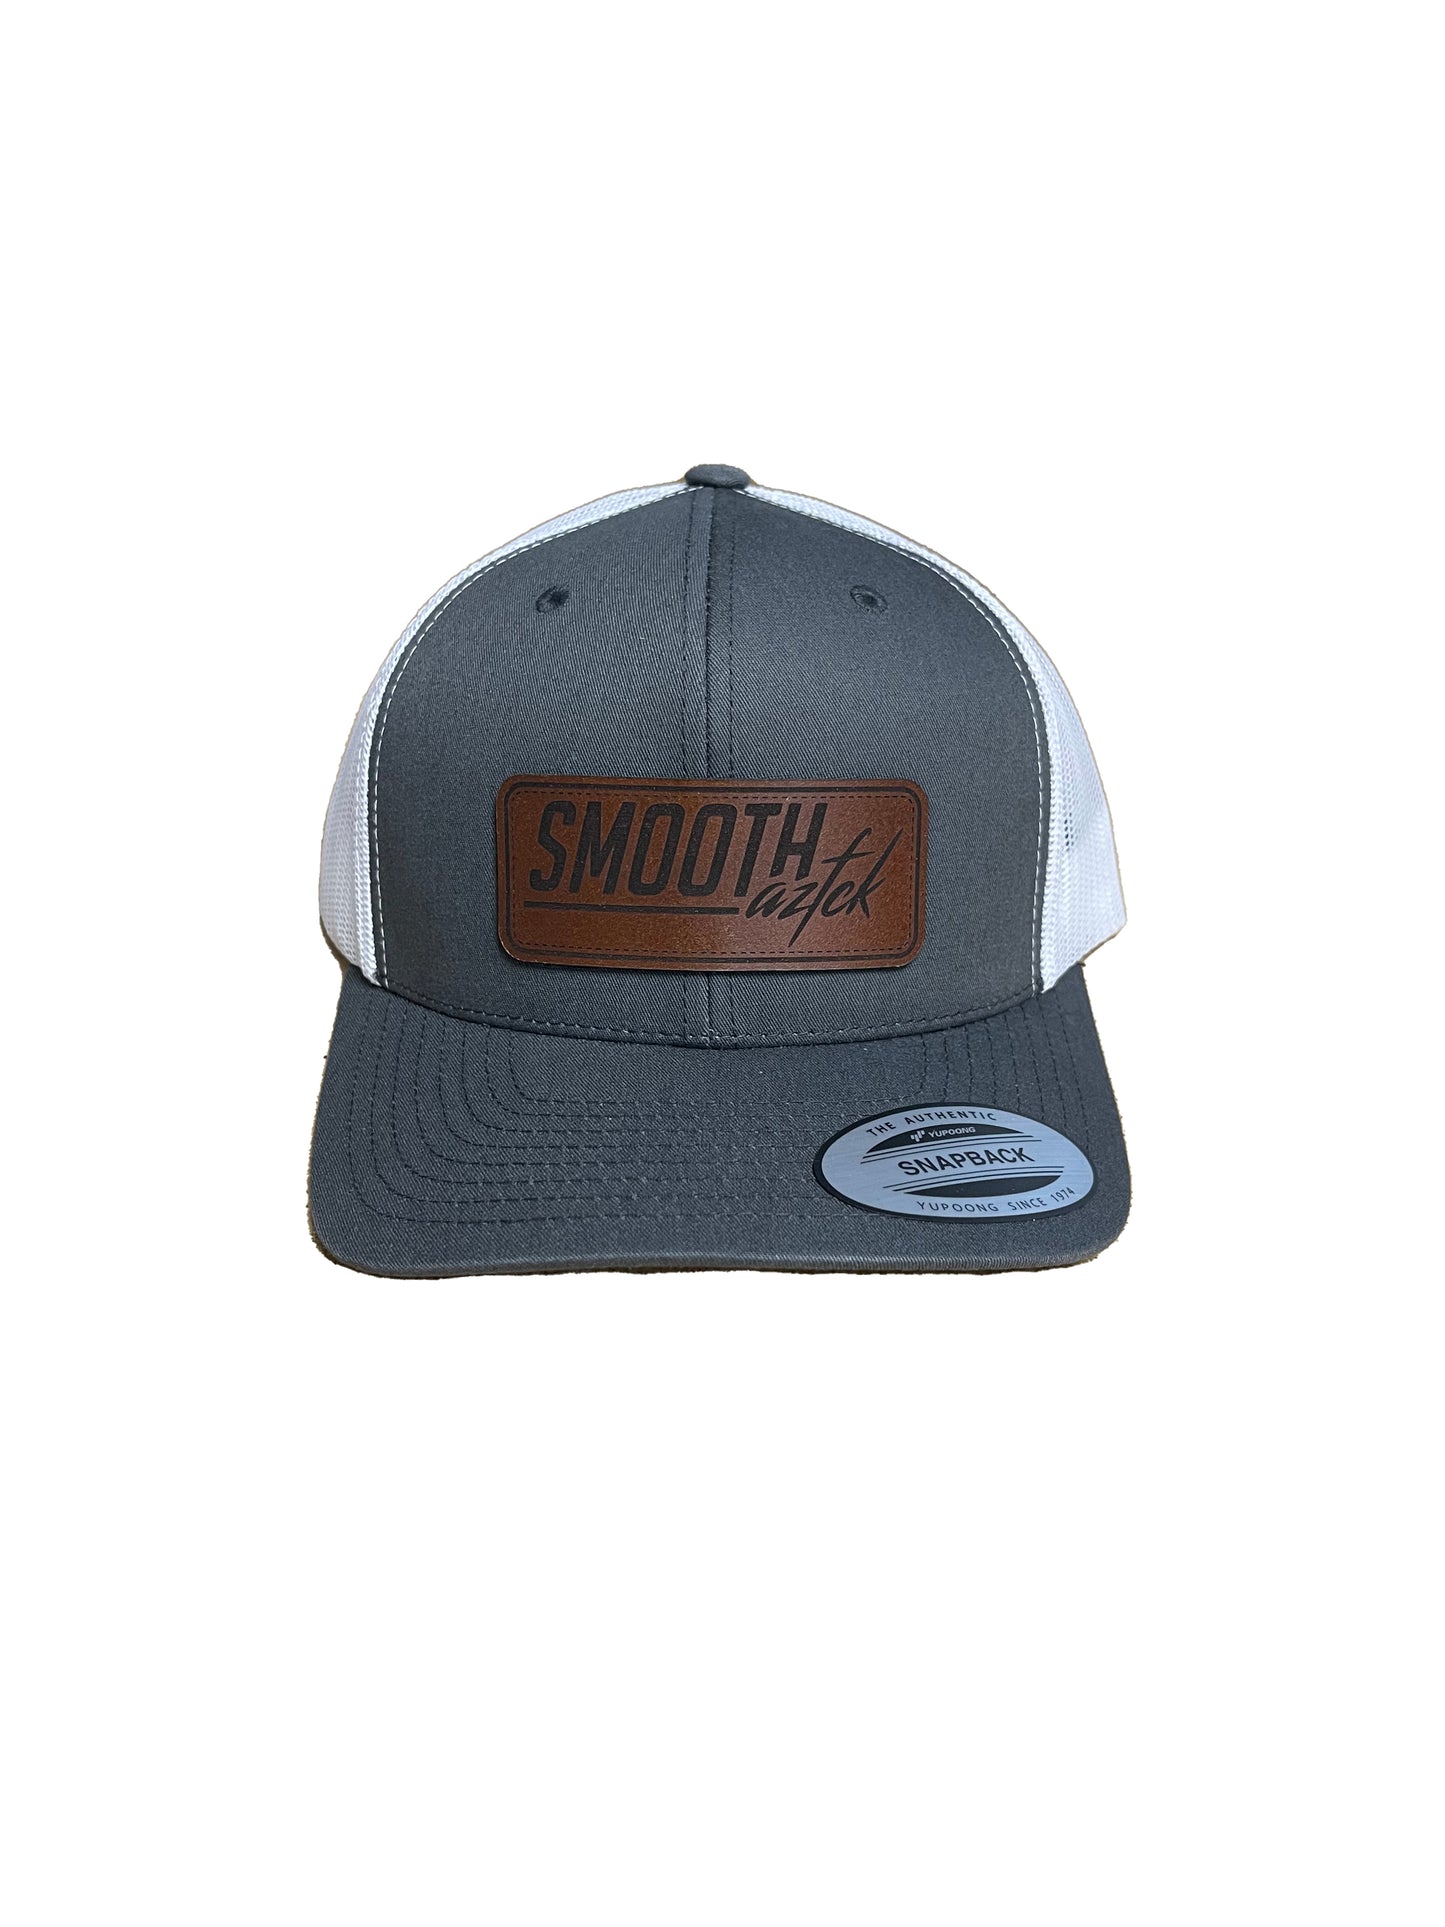 SMOOTHAZFCK Leather Patch Logo Snapback Hat